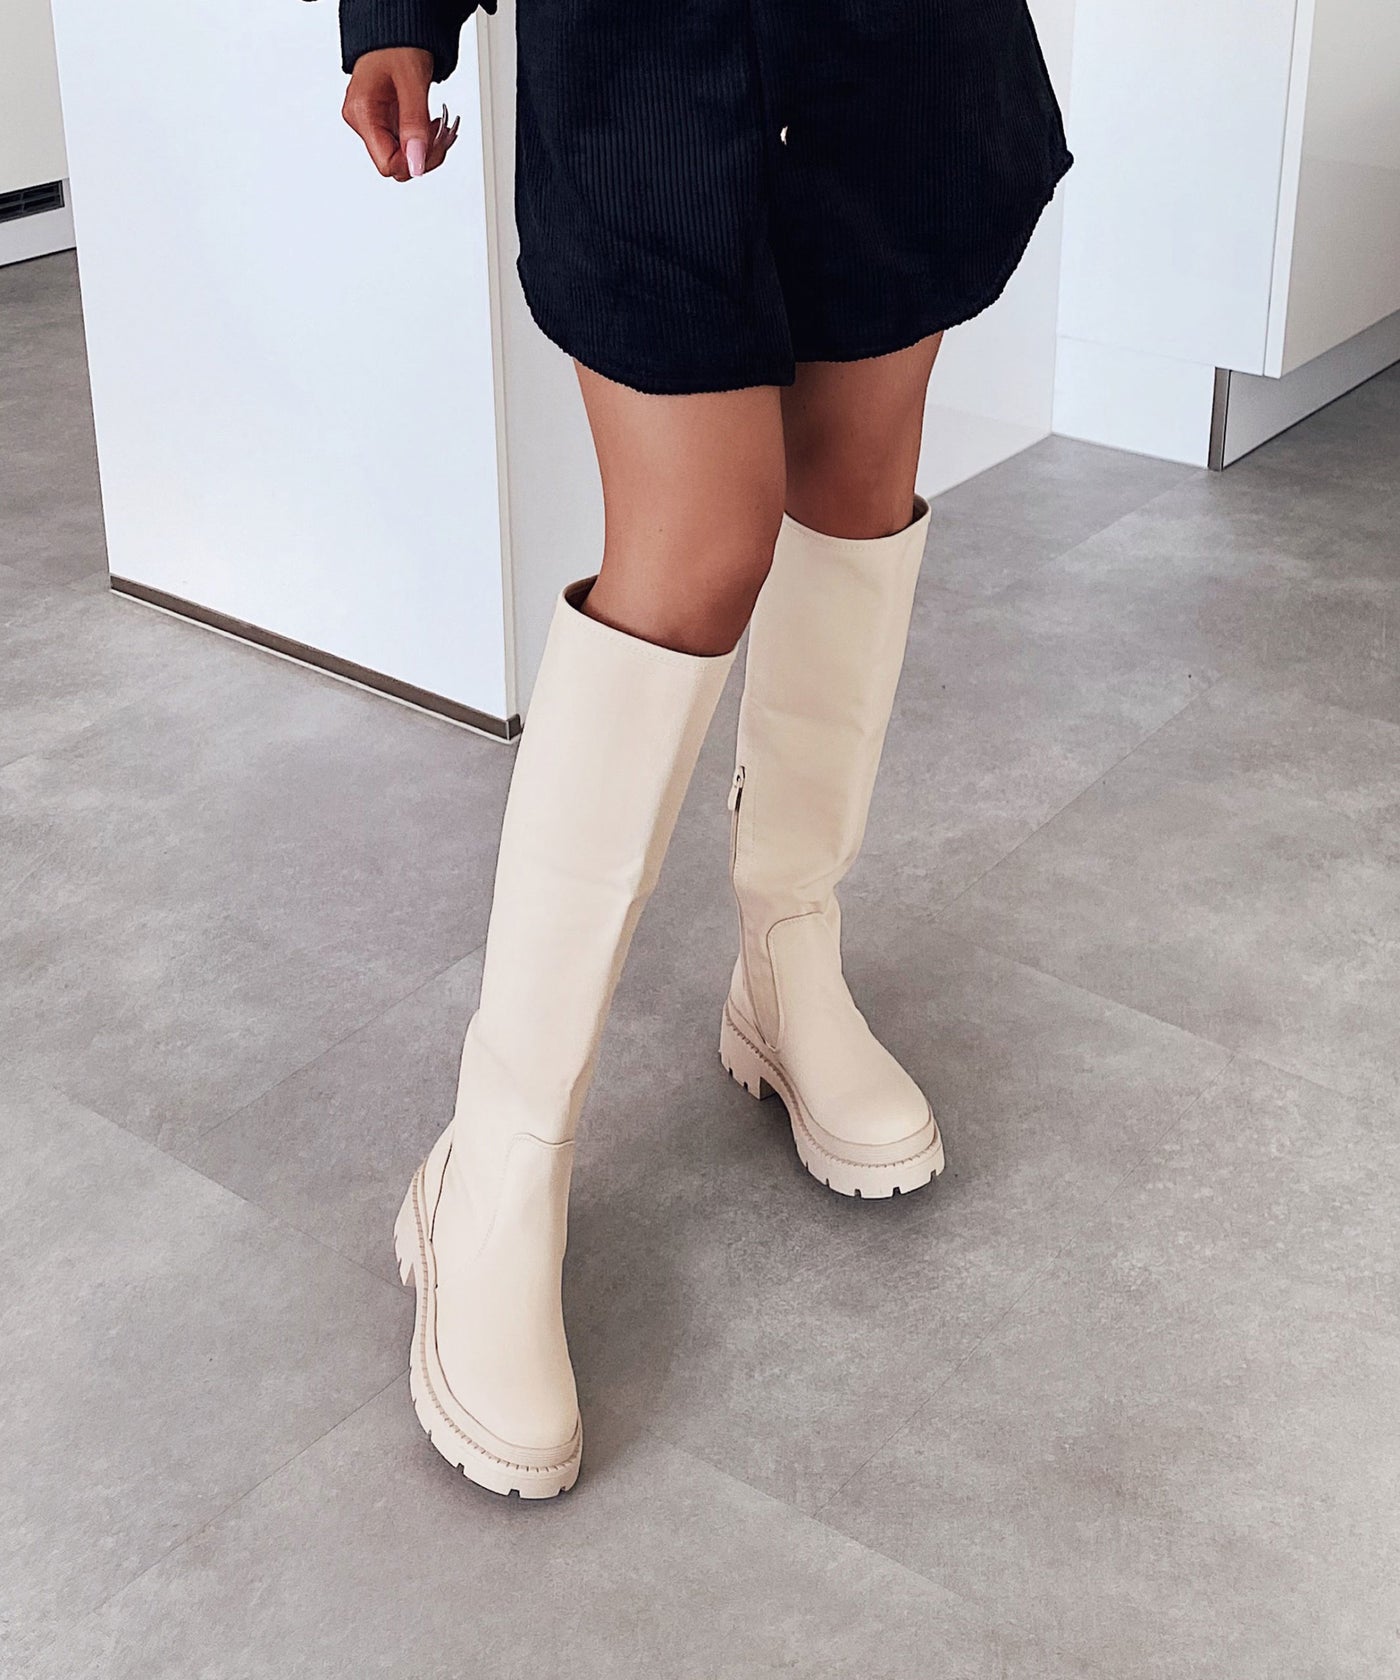 Stiefel Margot Beige  Ladypolitan - Fashion Onlineshop für Damen   